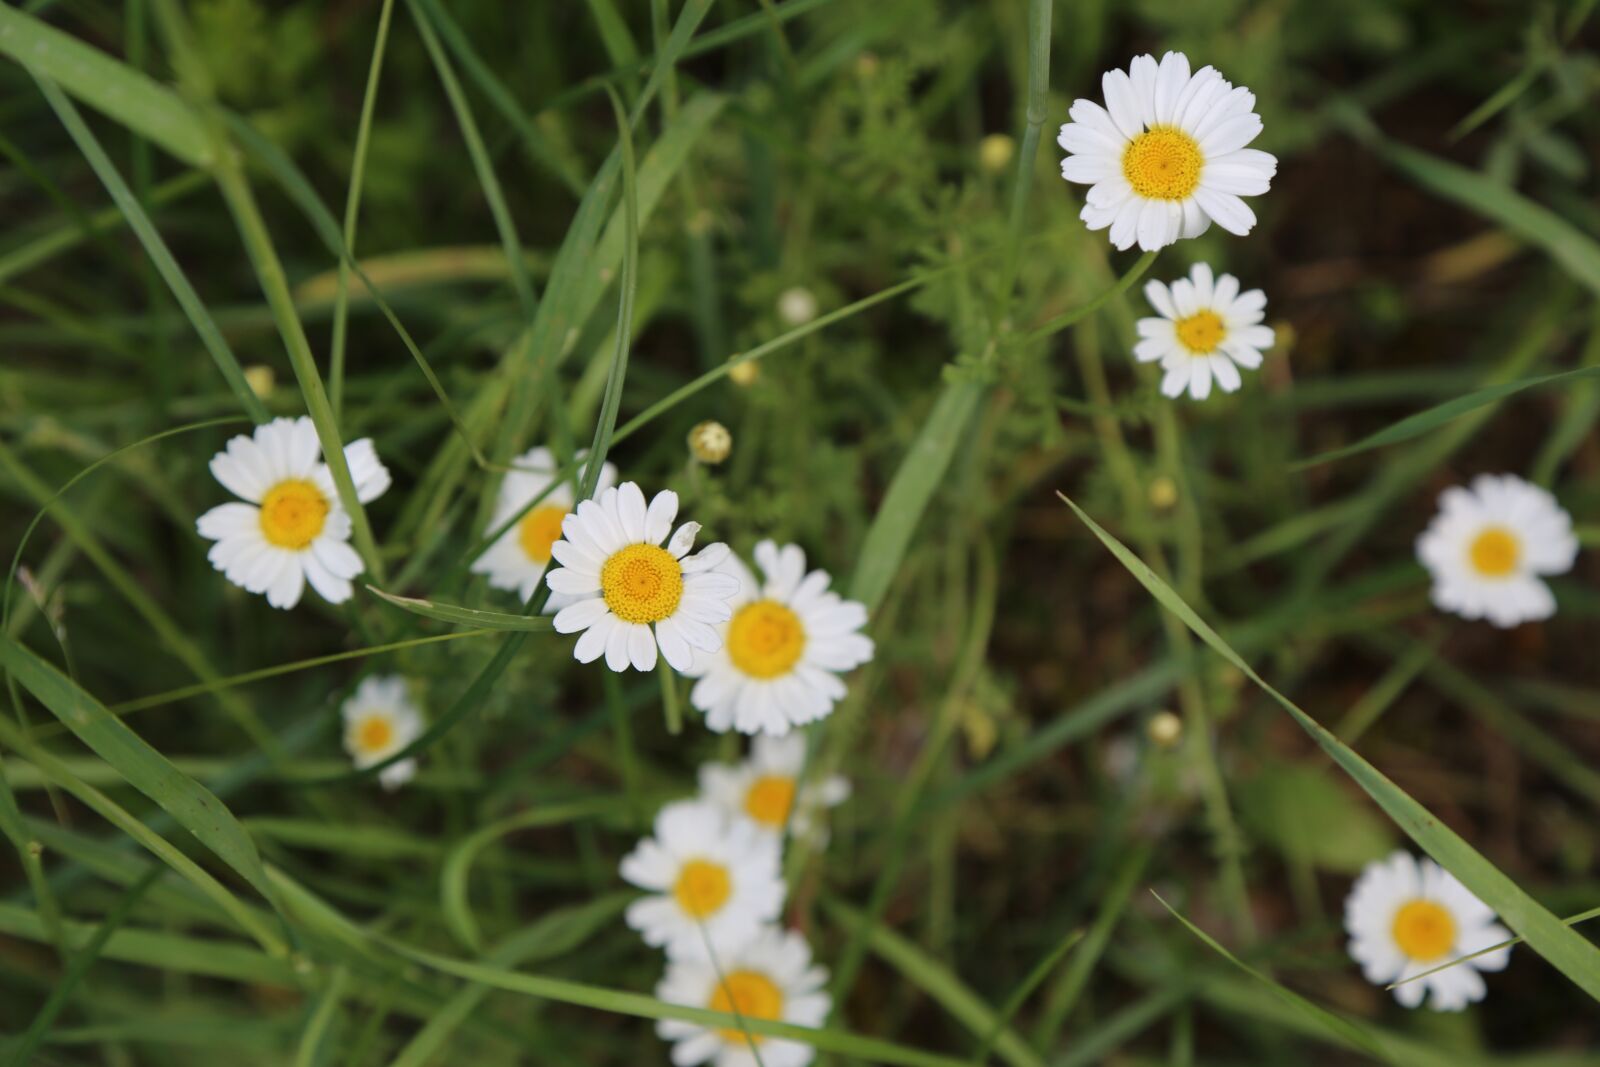 Canon EOS 5D Mark III sample photo. Daisy, spring, flower photography